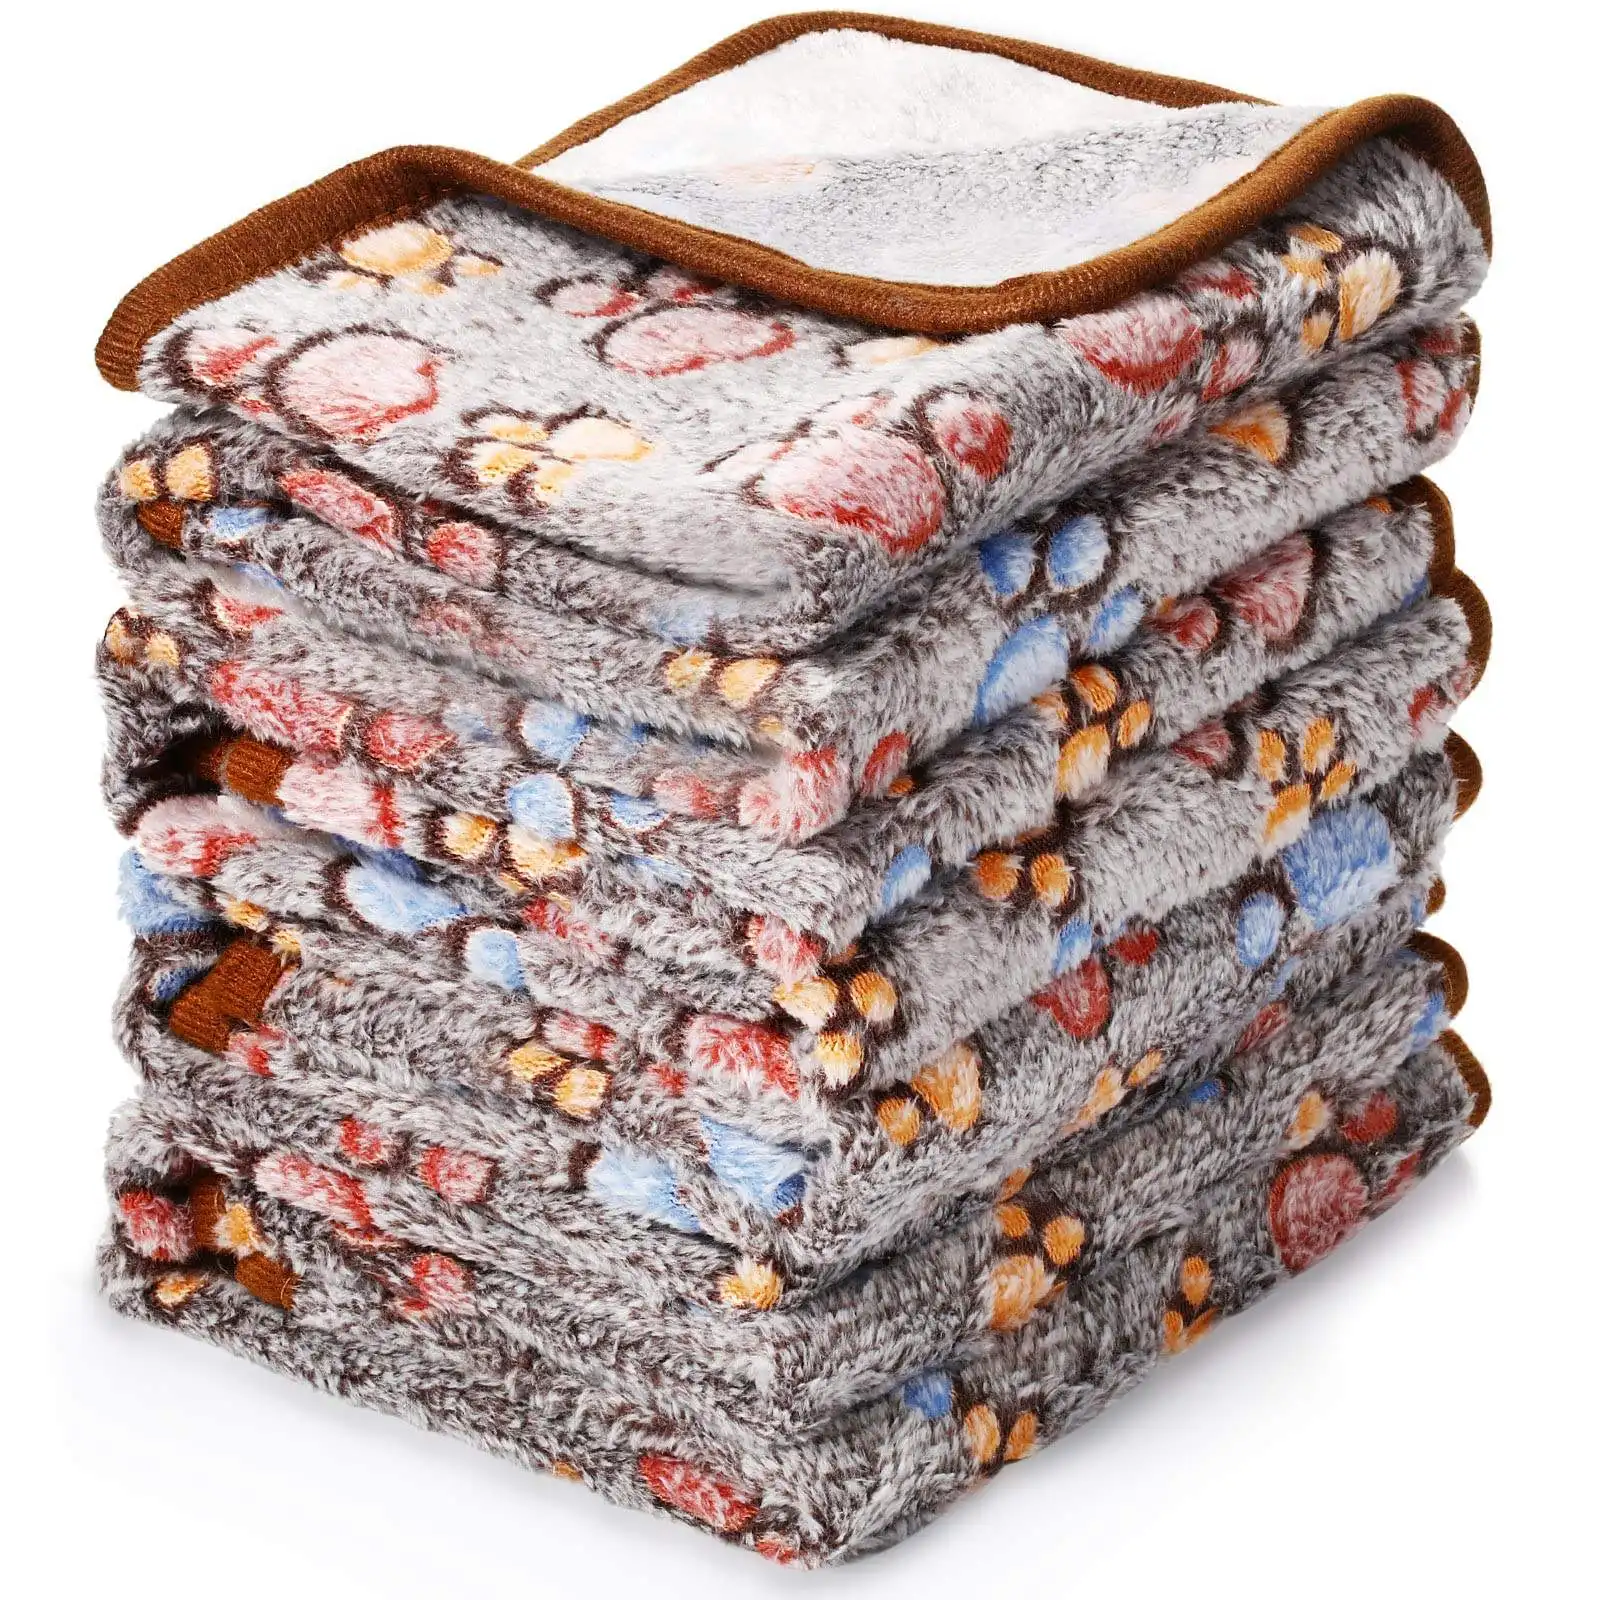 Теплые утолщенные пушистые одеяла для собак премиум класса, коралловый бархатный фланелевый флисовый коврик для щенков, одеяло с милыми принтами лап